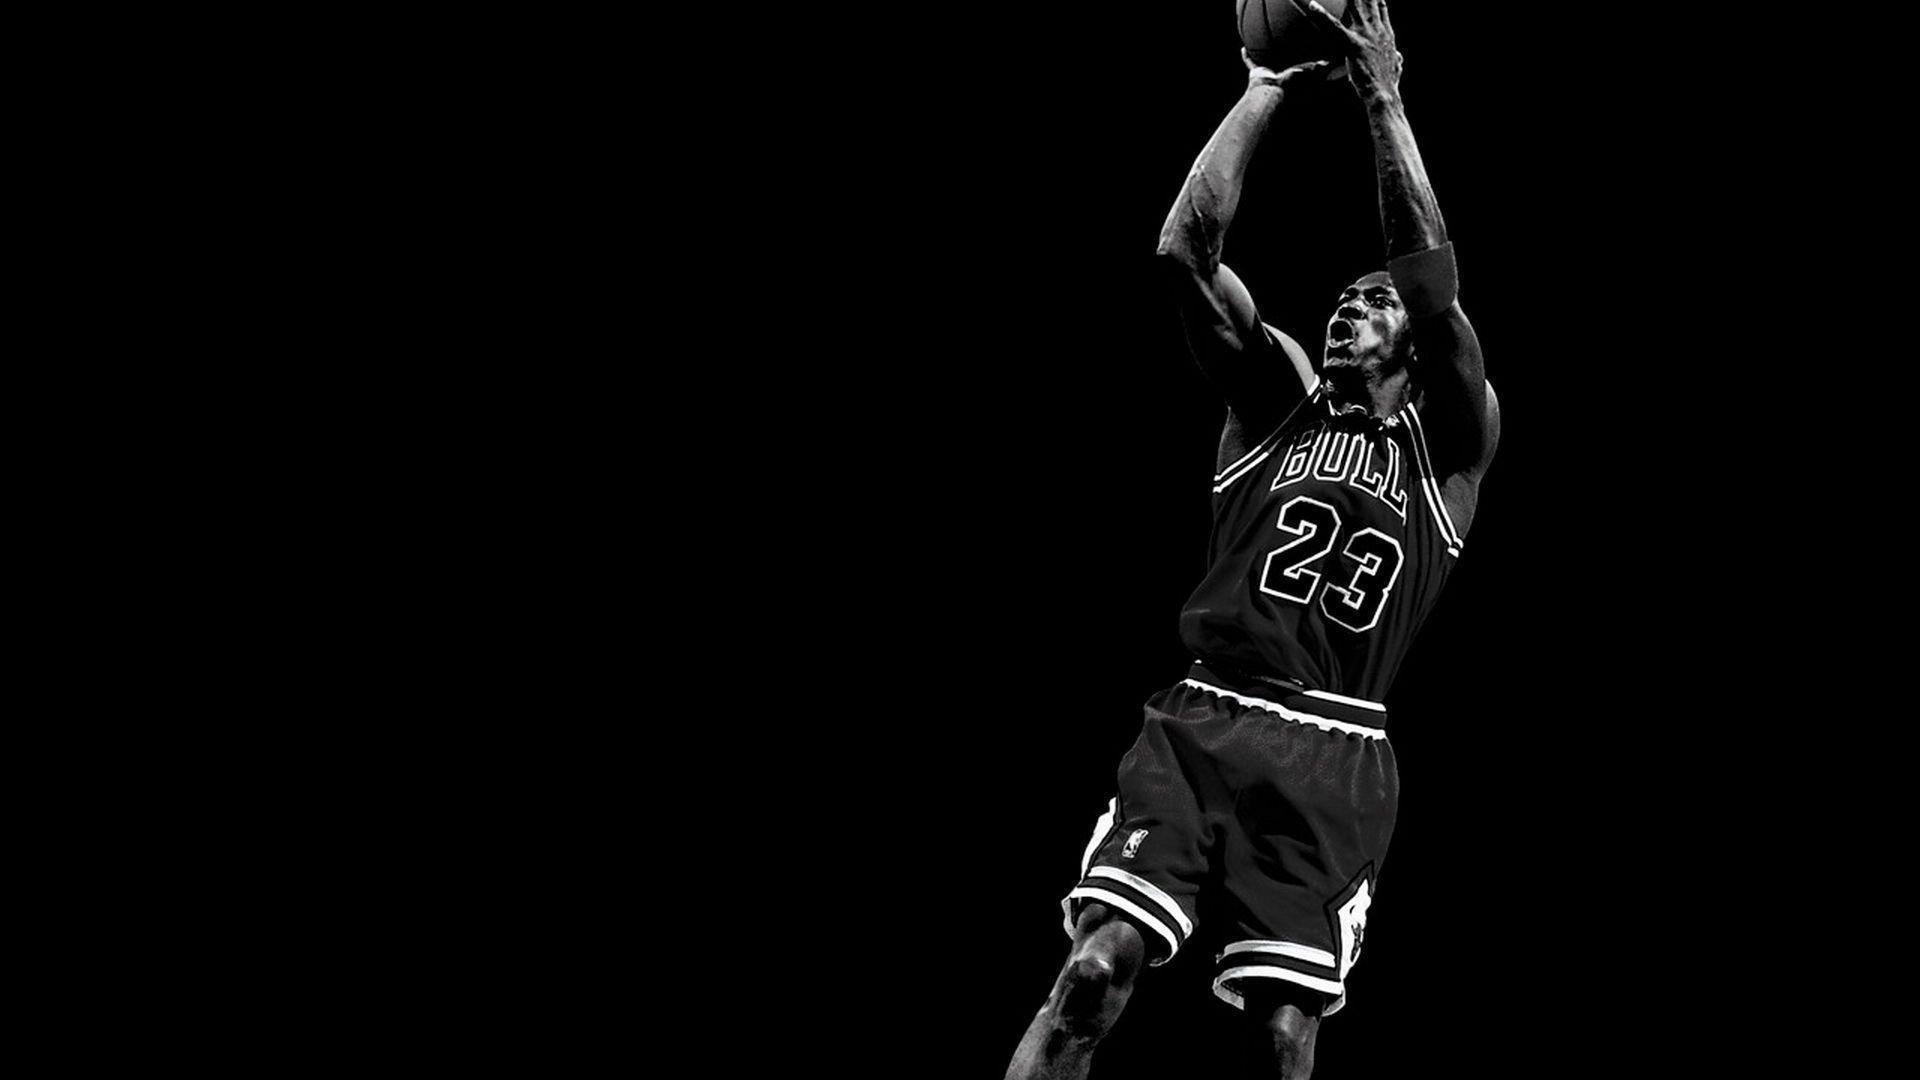 Fonds d&;écran Michael Jordan, tous les wallpaper Michael Jordan